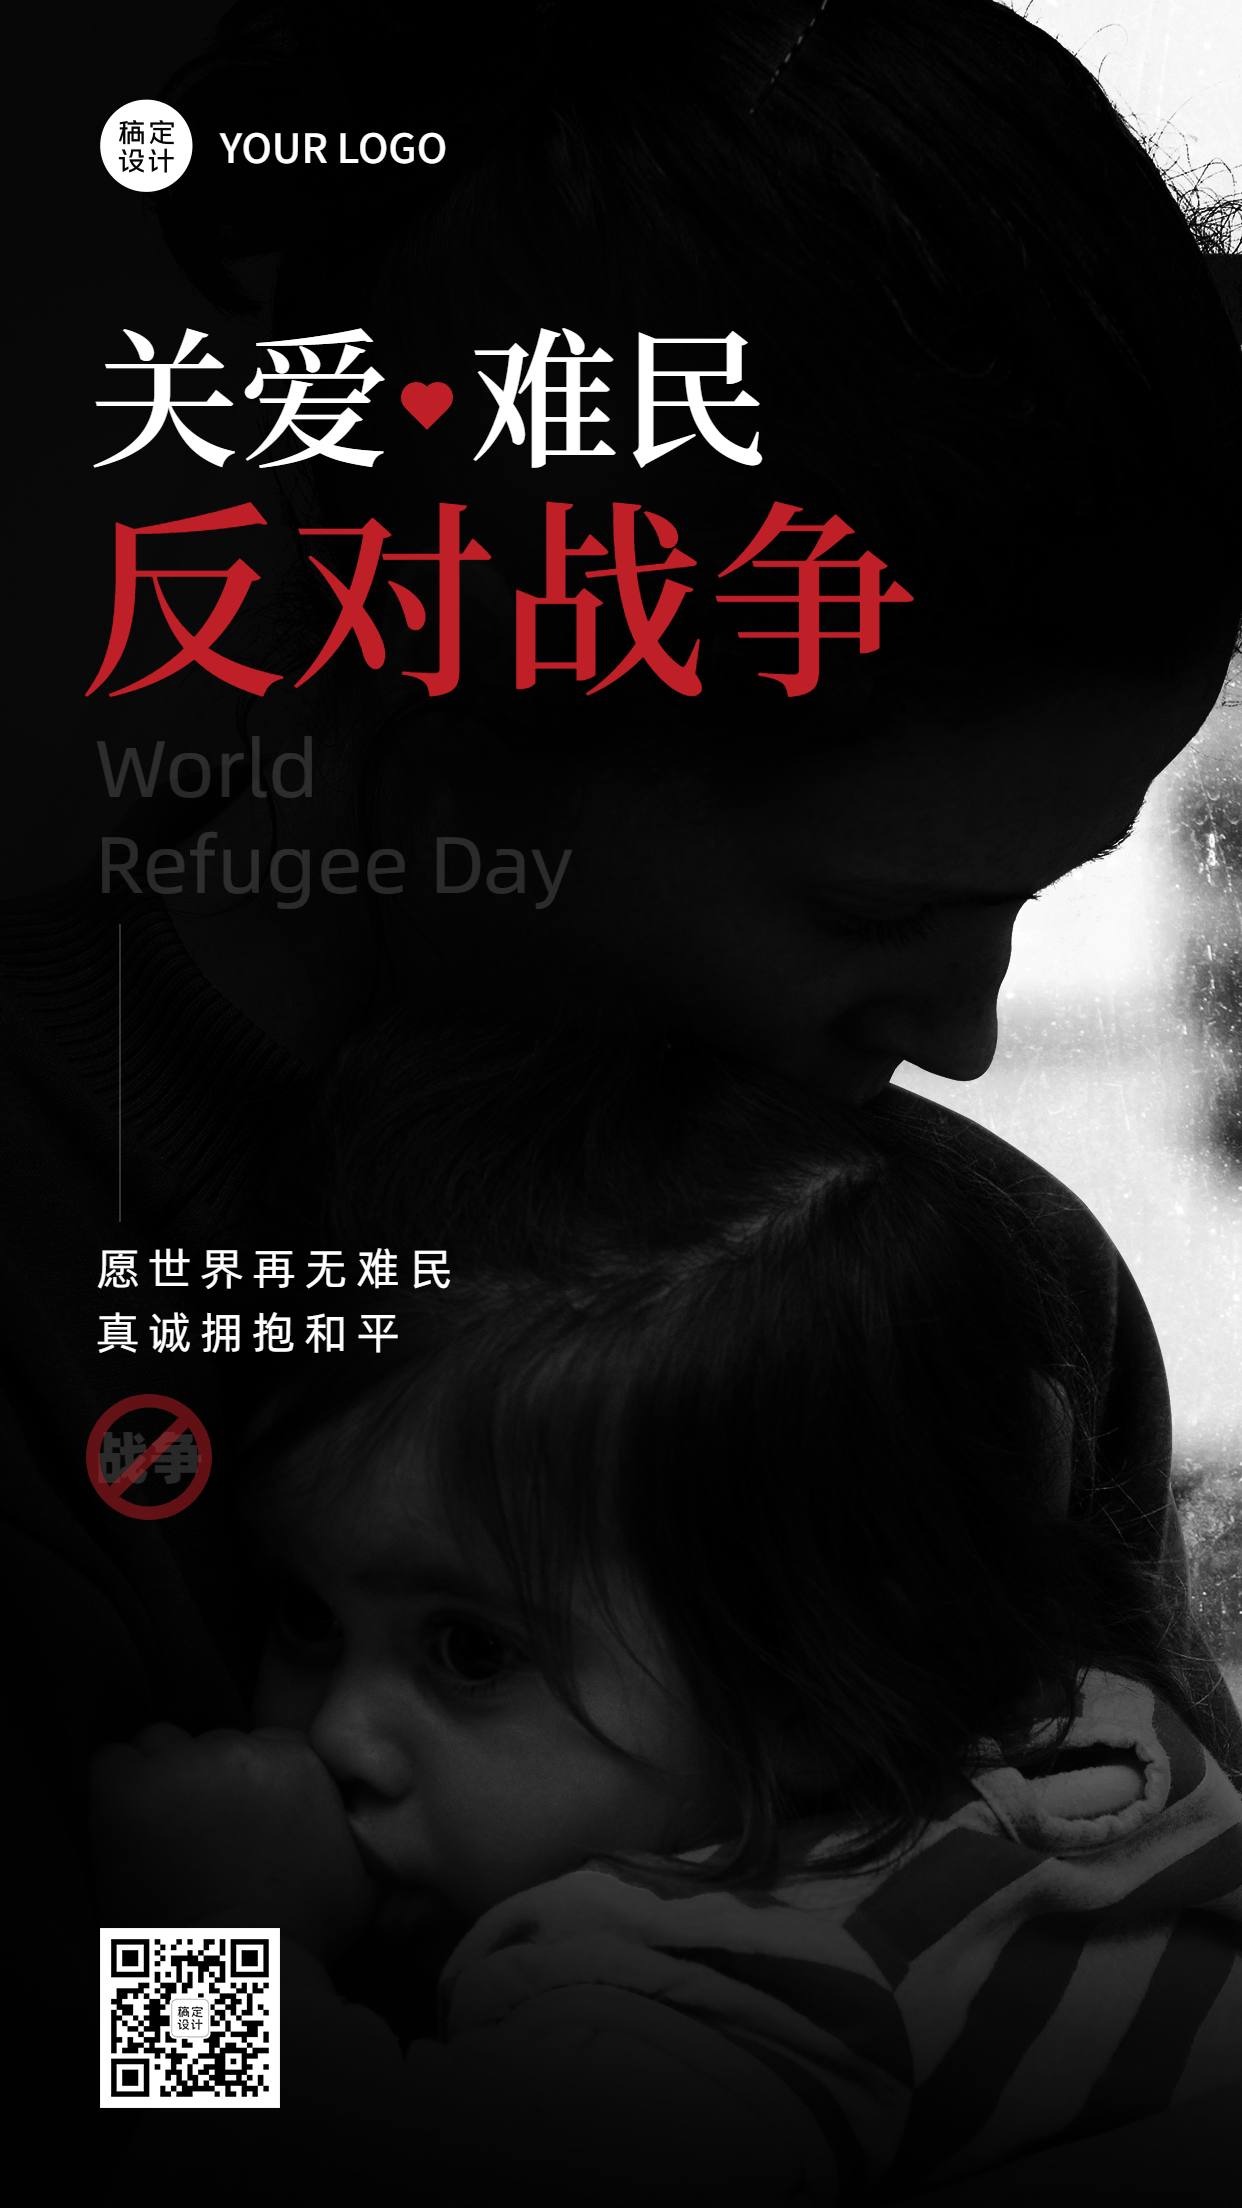 世界难民日节日宣传创意实景手机海报